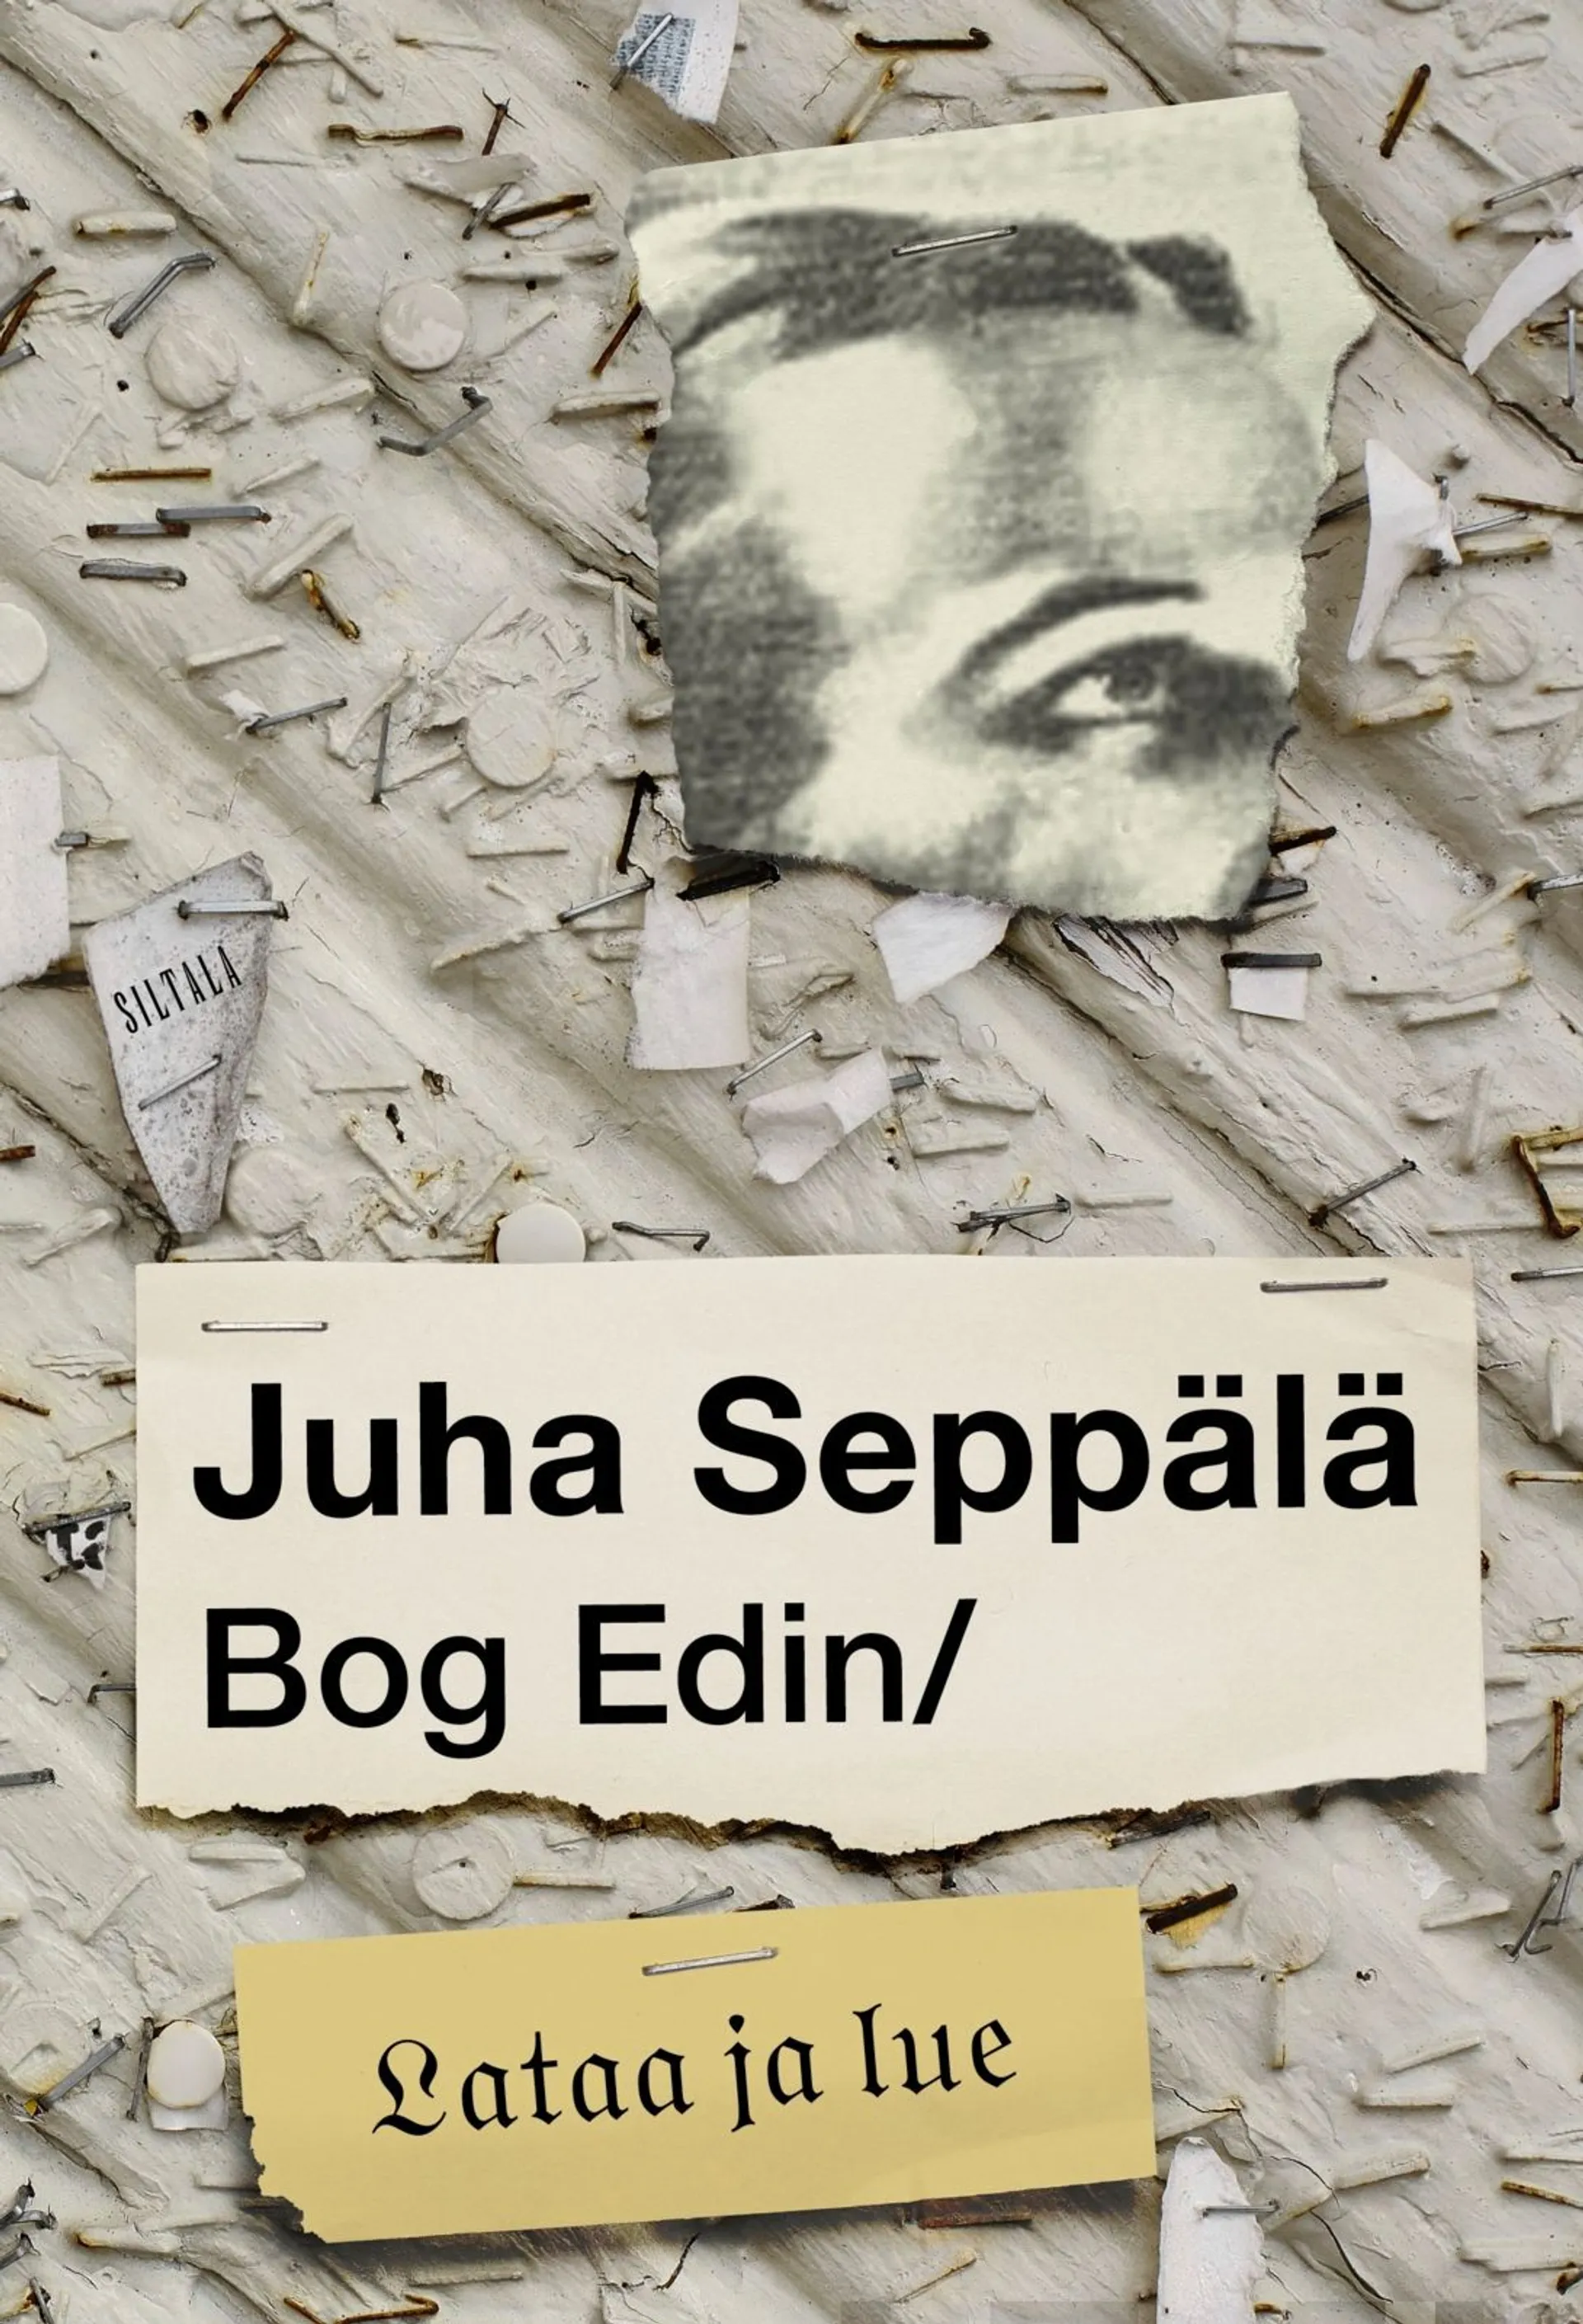 Seppälä, Bog Edin / Lataa ja lue - Tekstejä 1980-2020